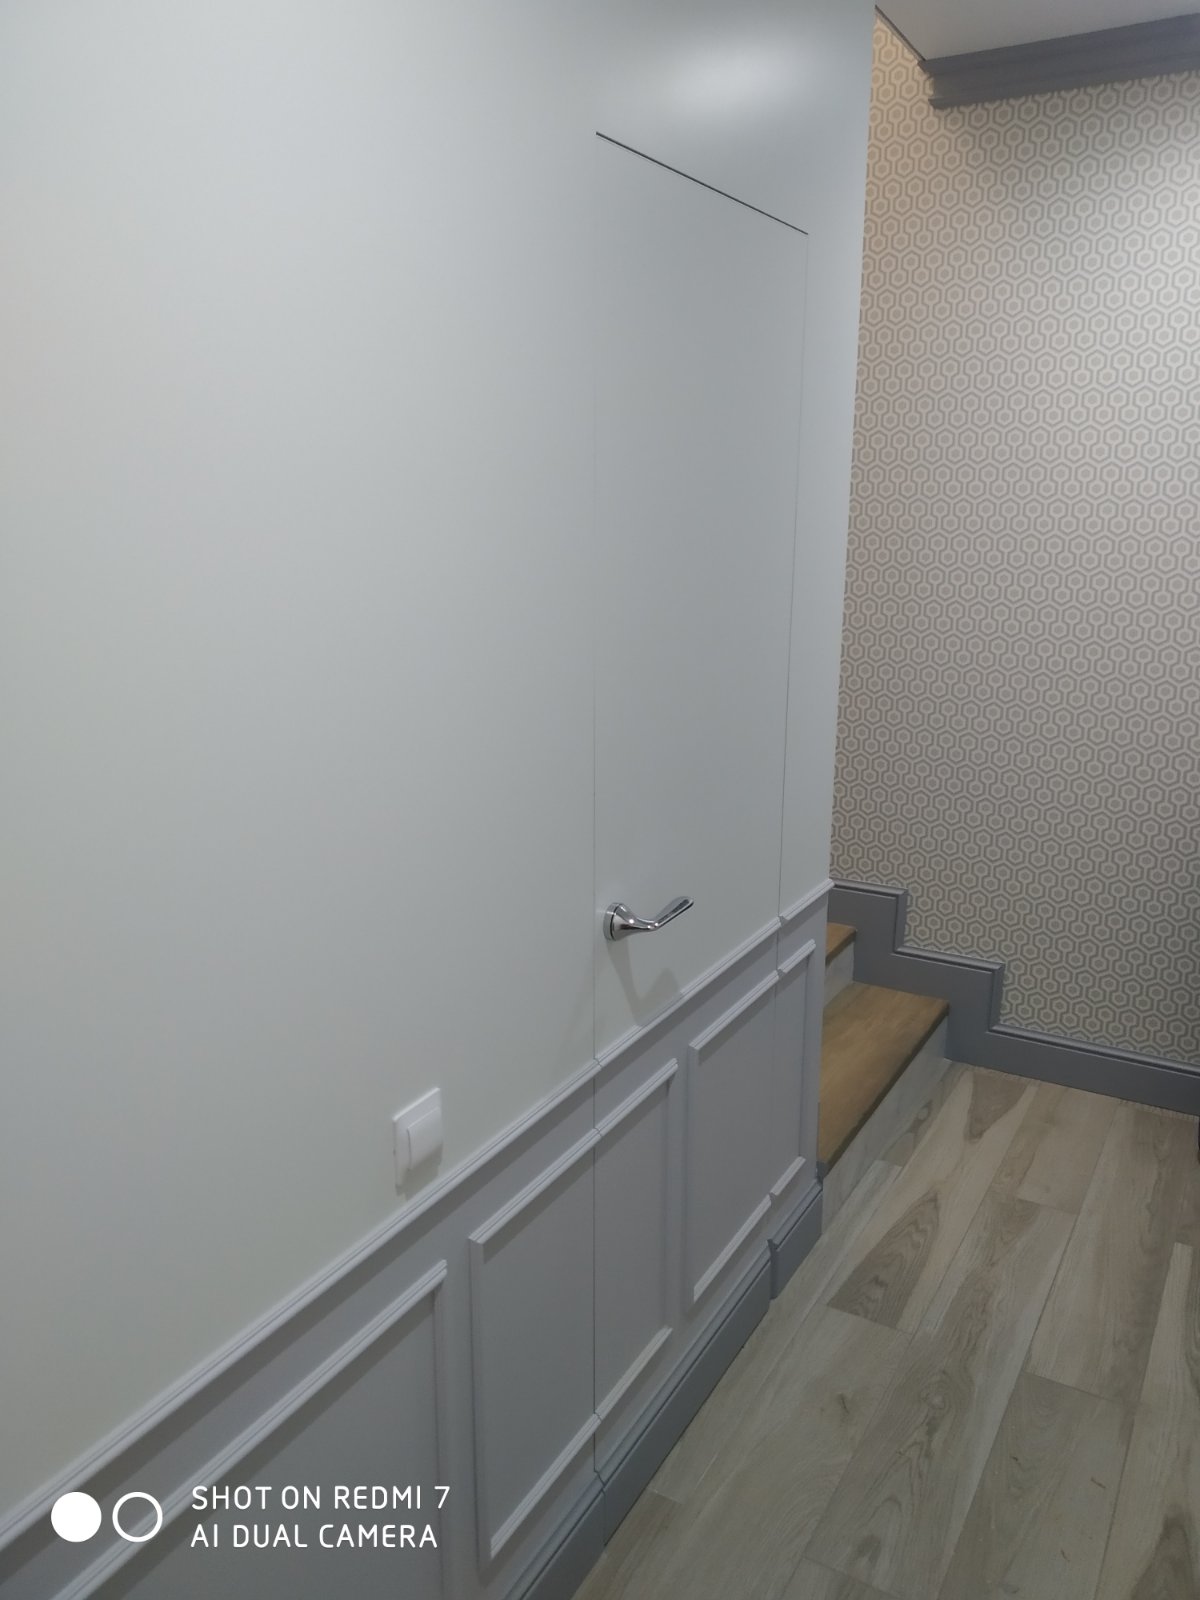 Скрытая дверь невидимка под покраску в интерьере коридора